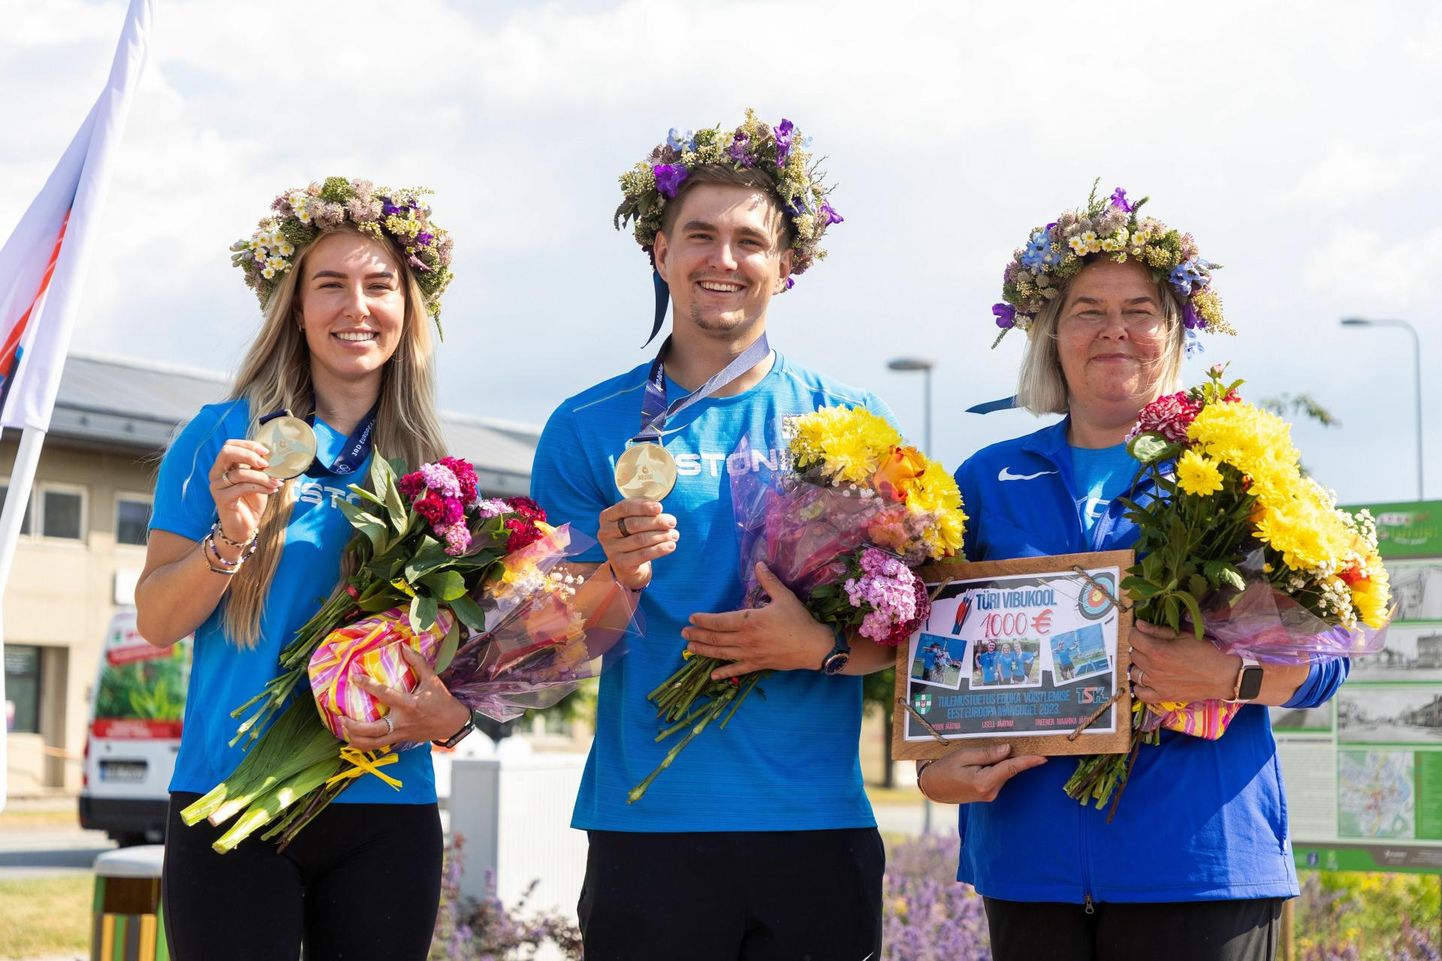 Euroopa mängude võitjate vastuvõtt Türil 30. juunil. Lisell (vasakult) ja Robin Jäätma said kuldmedali plokkvibu võistkonnavõistluses, nende ema Maarika Jäätma tegutseb treenerina.